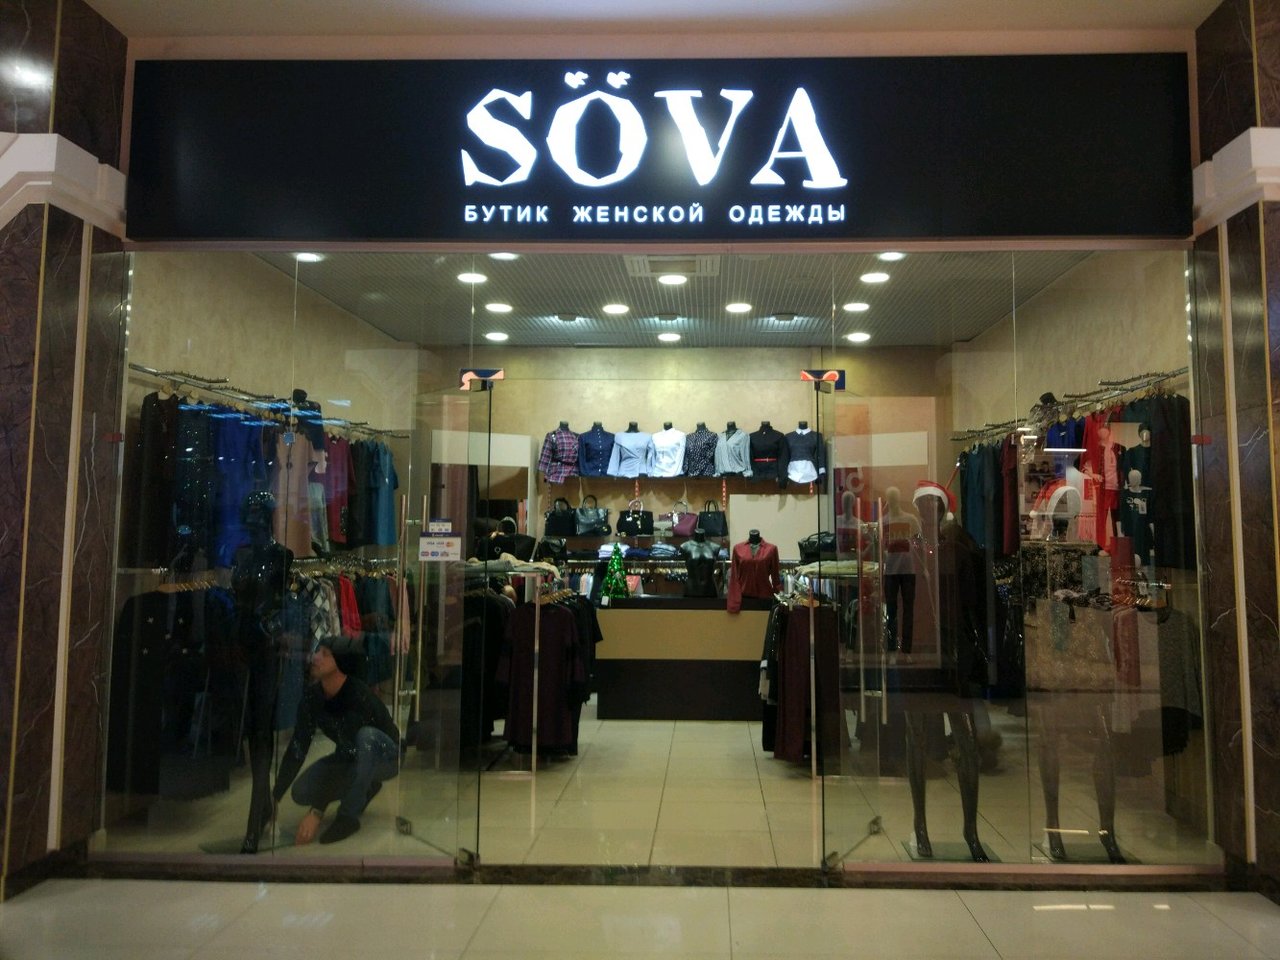 Sova clothes